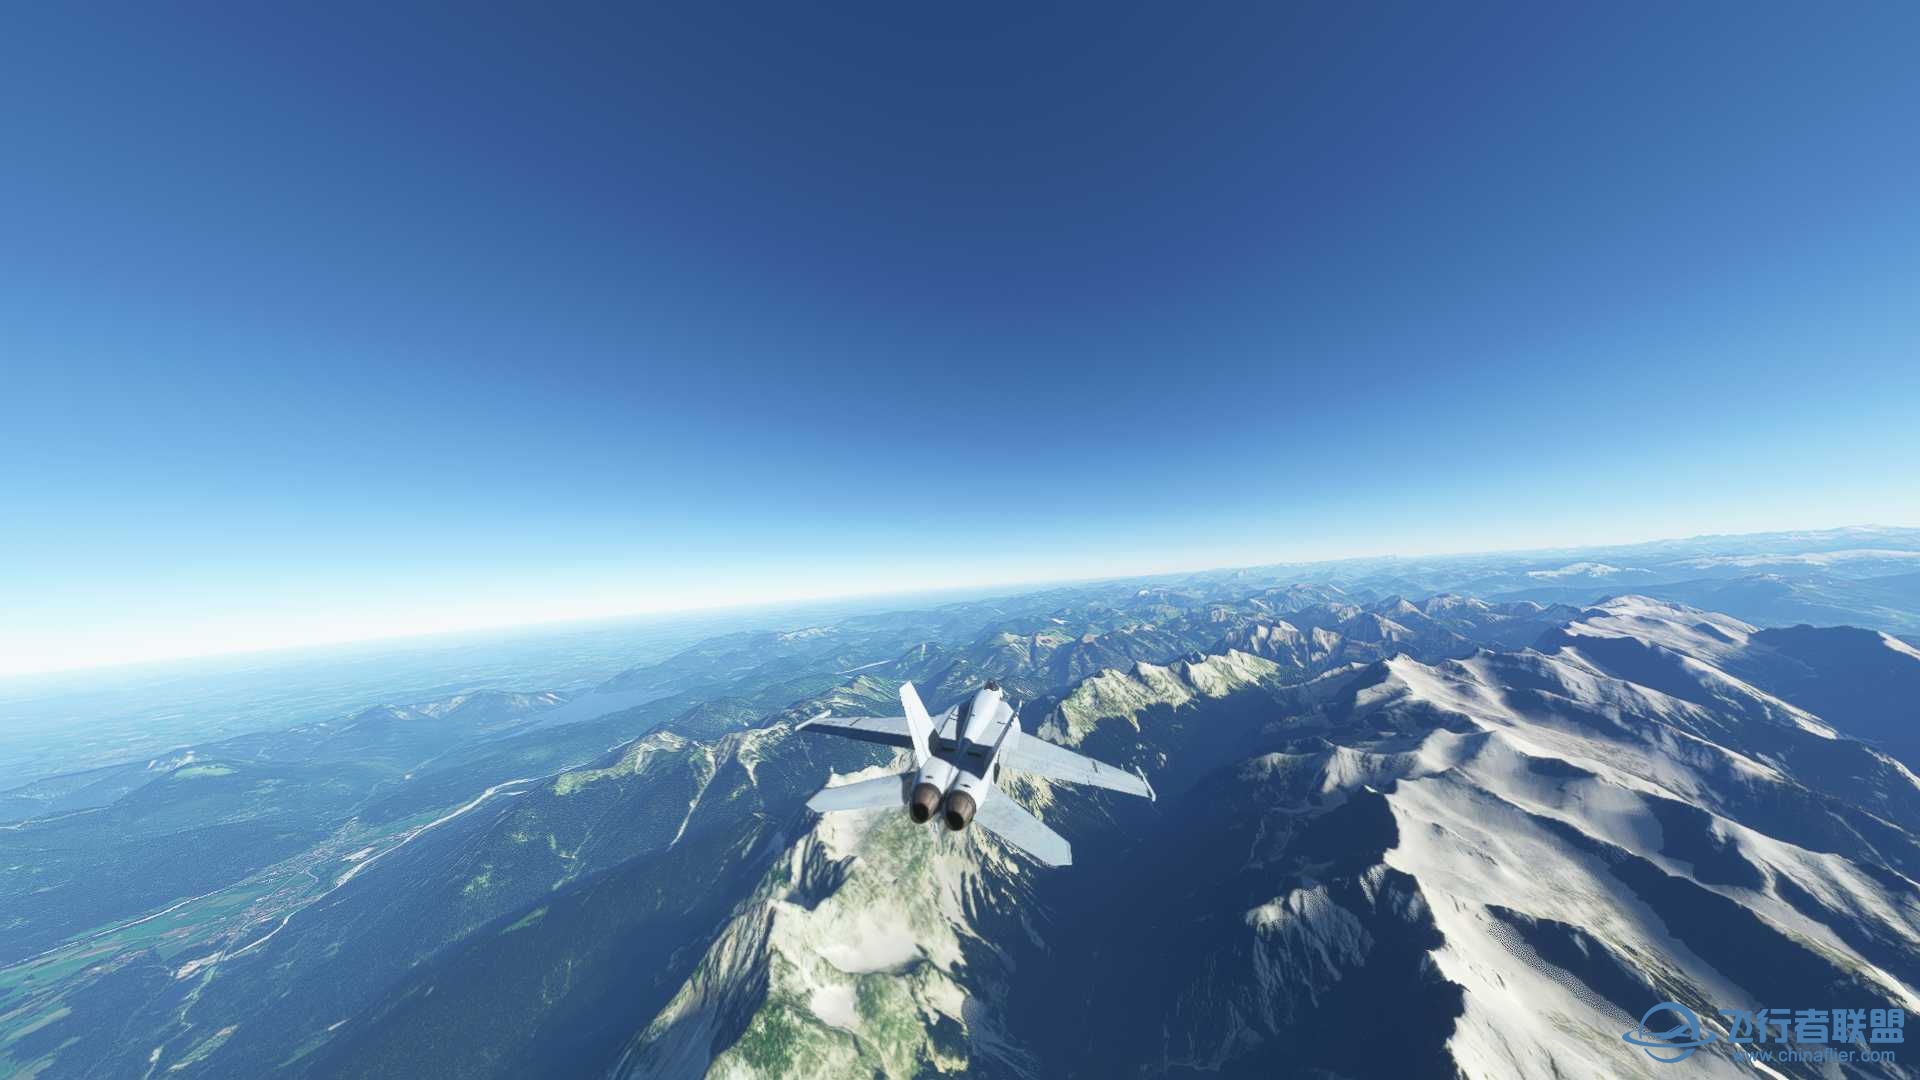 阿尔卑斯山脉附近飞行无法进行游戏-3809 